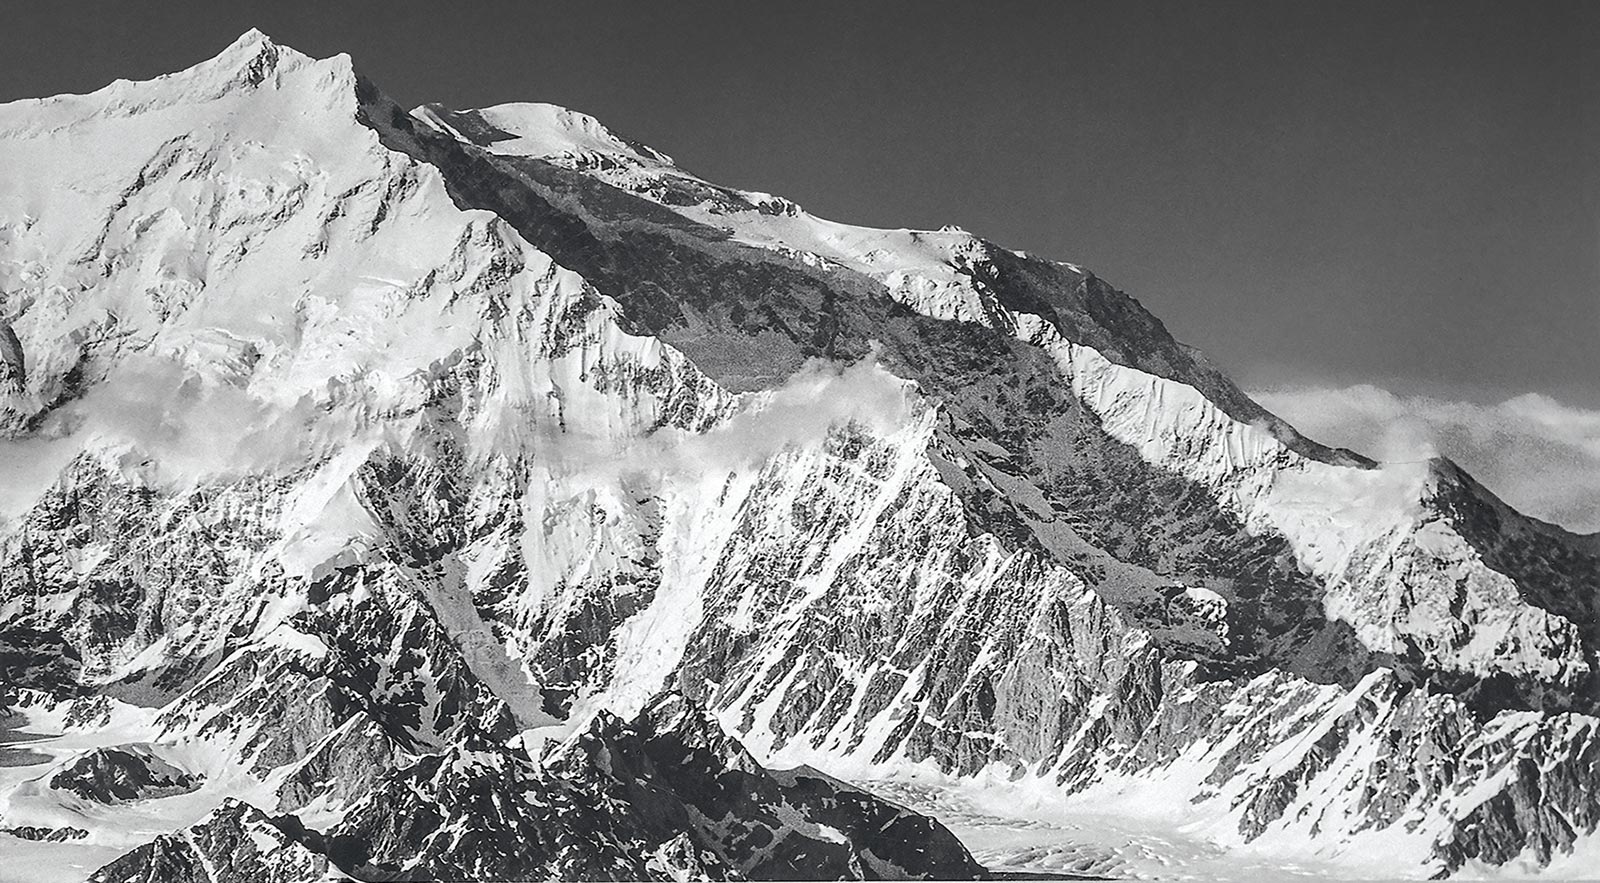 на хребет Колибри на горе Логан (Mount Logan, 6050 м) - высочайшей точке Канады демонстрирует необъятность восхождения, начинающегося со скалистых утесов в правом нижнем углу до вершины в 5600 метрах пути и в 4000 метрах по вертикали. Фото: Roy Johnson Jr.